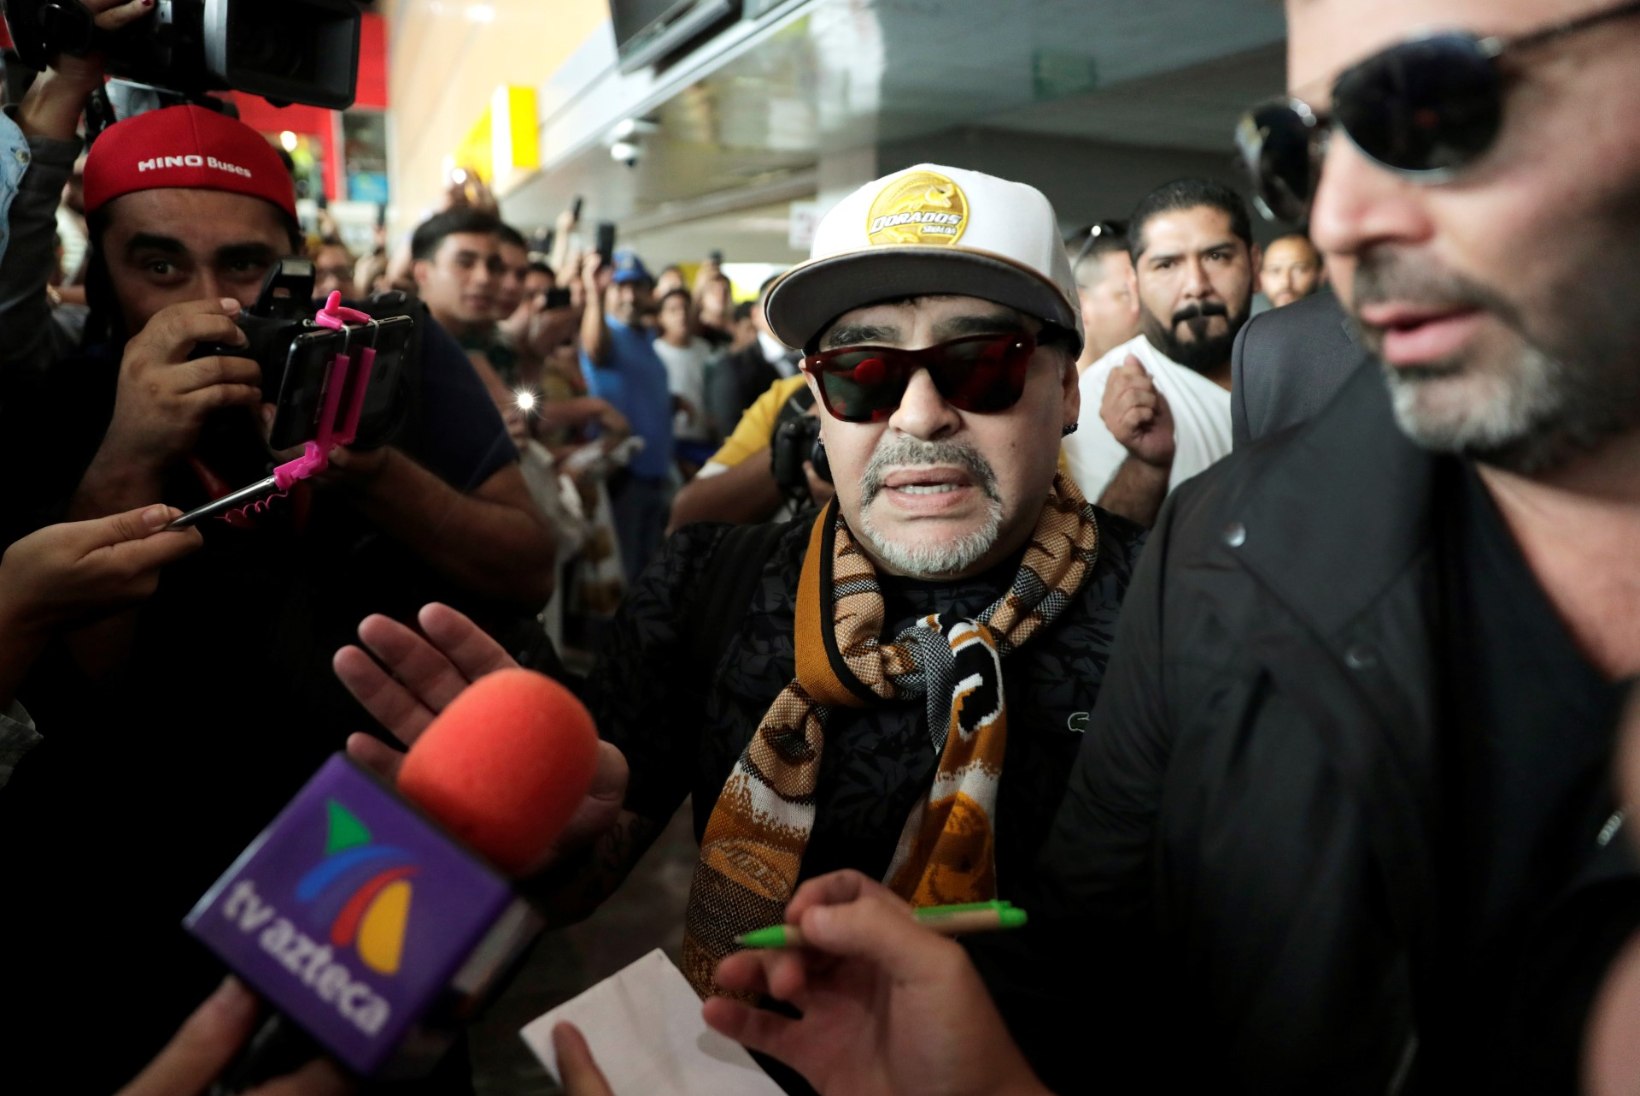 VIDEO | Uue tööposti leidnud Diego Maradona võeti lennujaamas uhkelt vastu